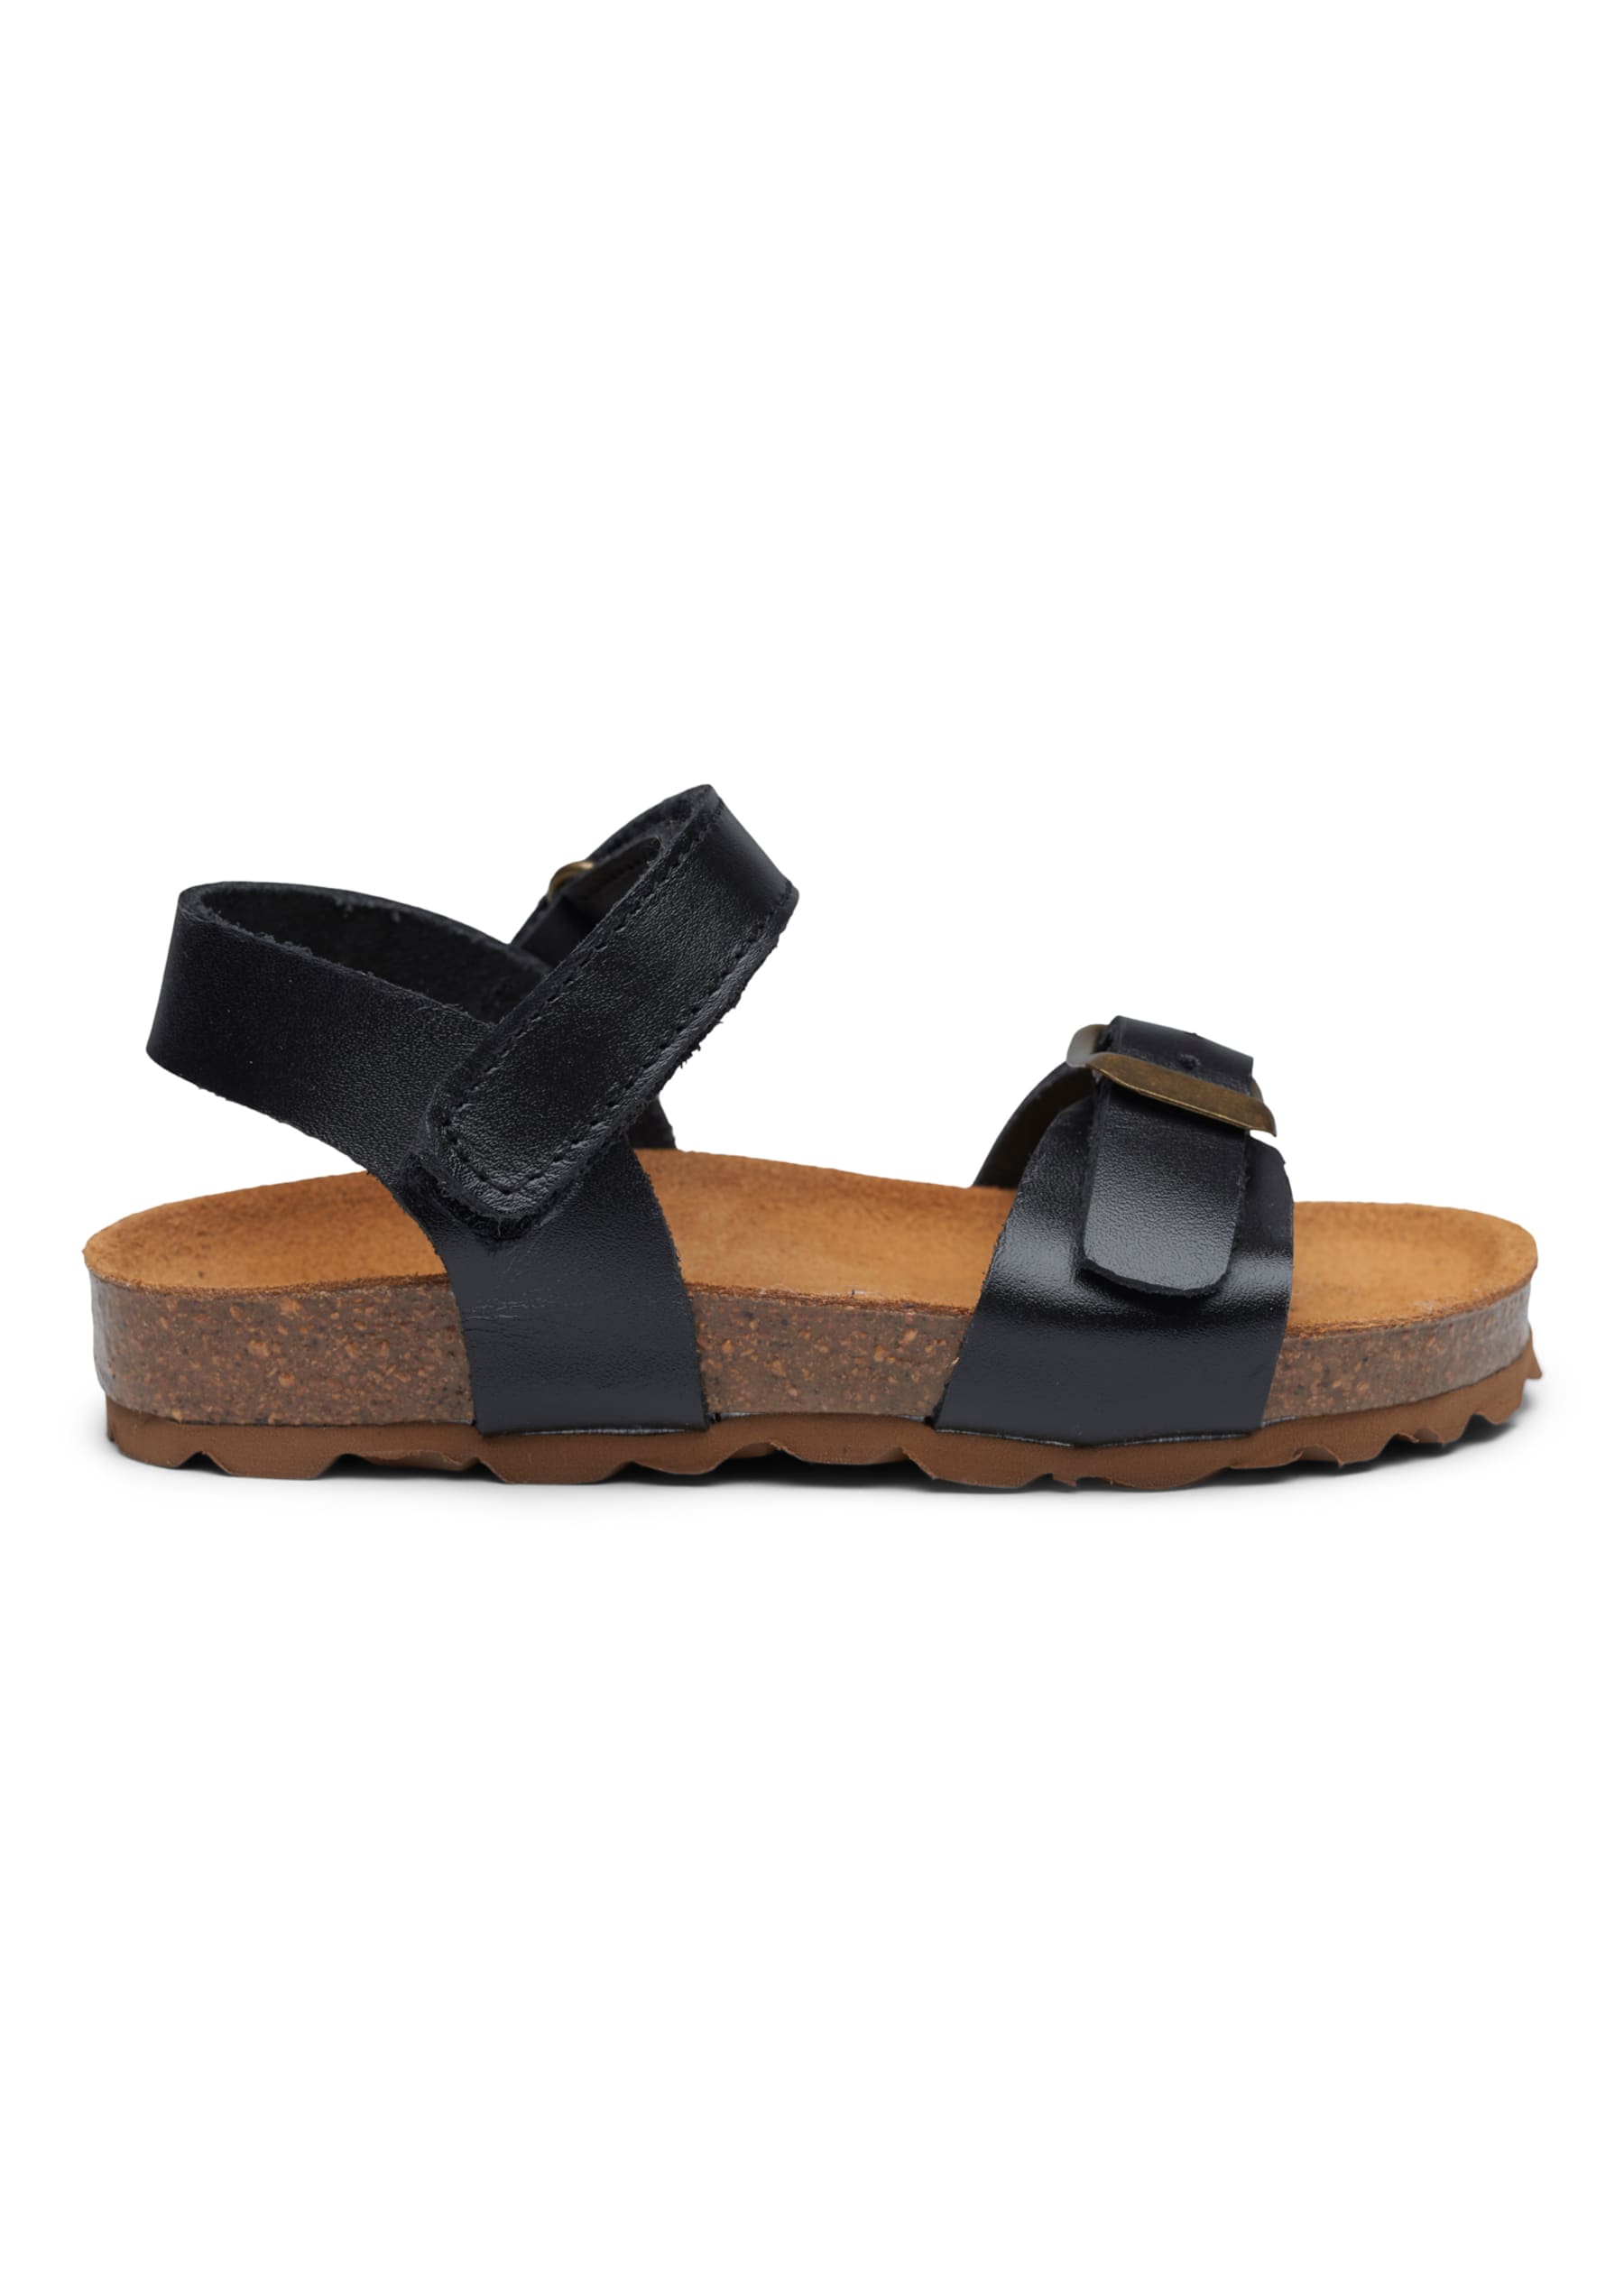 Pom Cork Sandal, Black - pom pom - Lillelykke